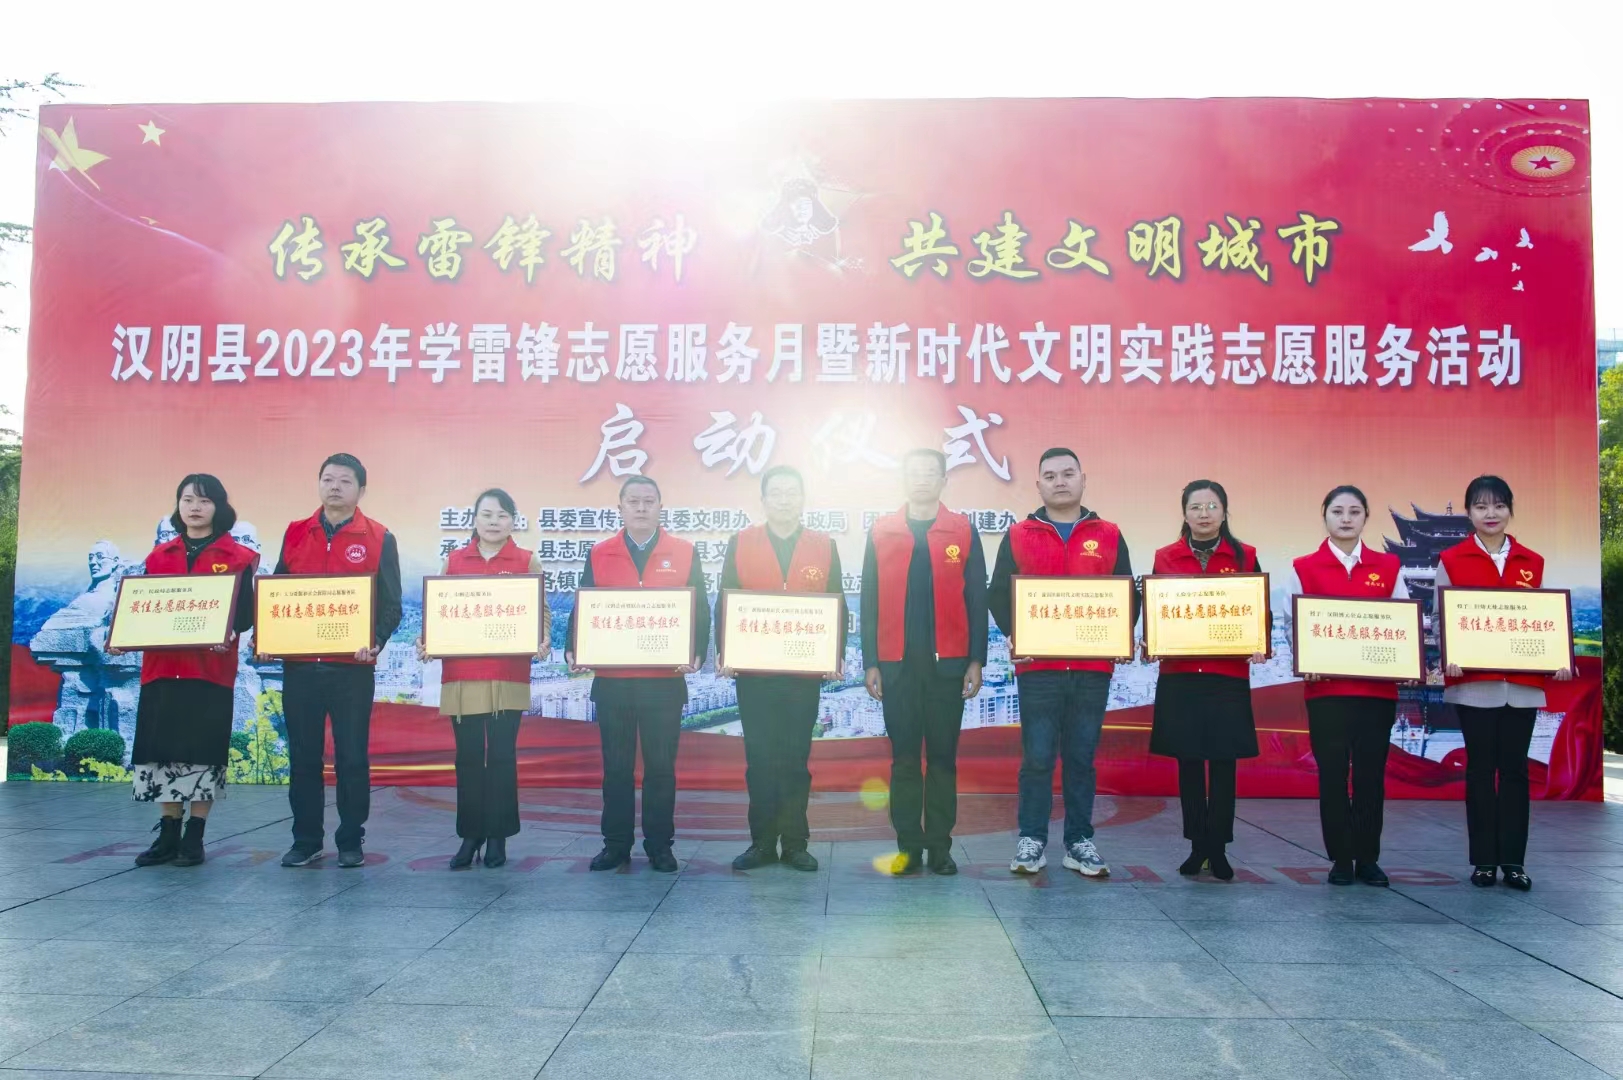 赞！漩涡镇新时代文明实践志愿服务队 获汉阴县“最佳志愿服务组织”